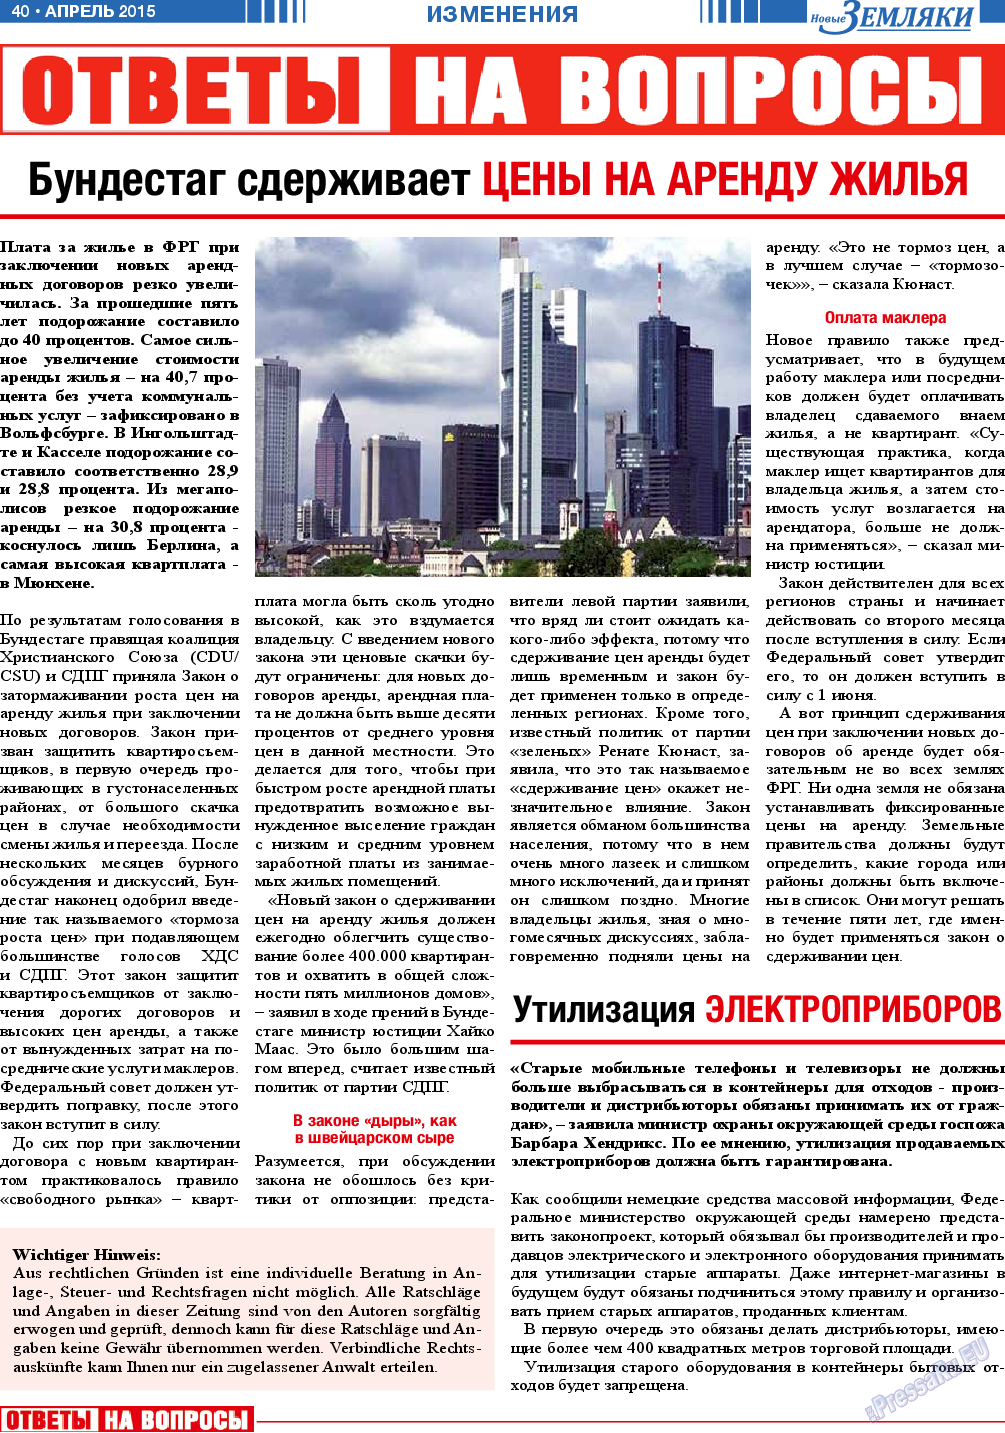 Новые Земляки, газета. 2015 №4 стр.40